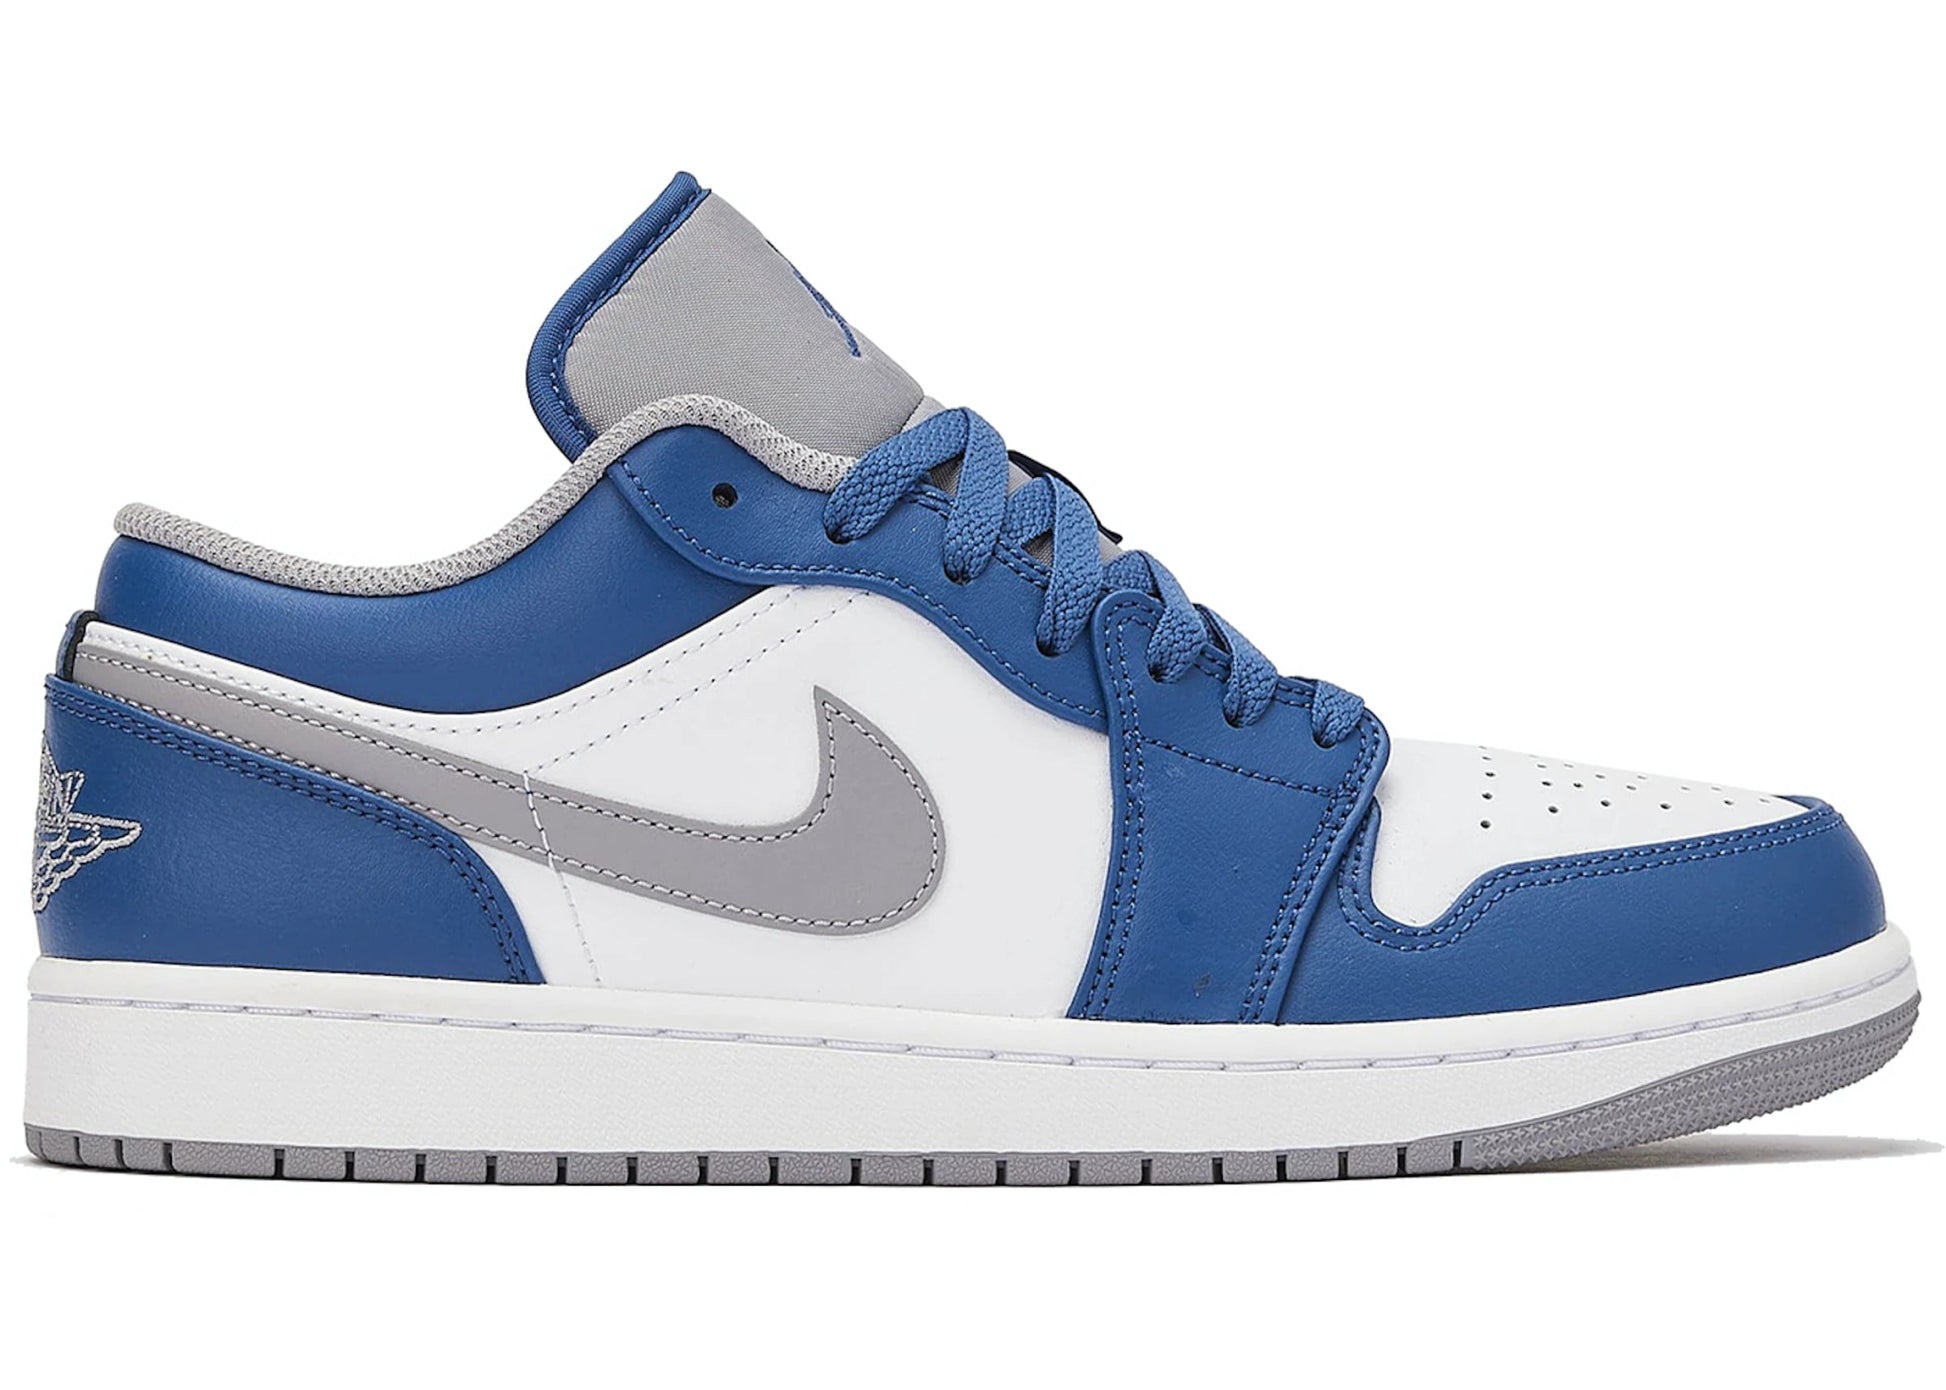 Air mars jordan 1 Low True Blue - Paroissesaintefoy Sneakers Sale Online